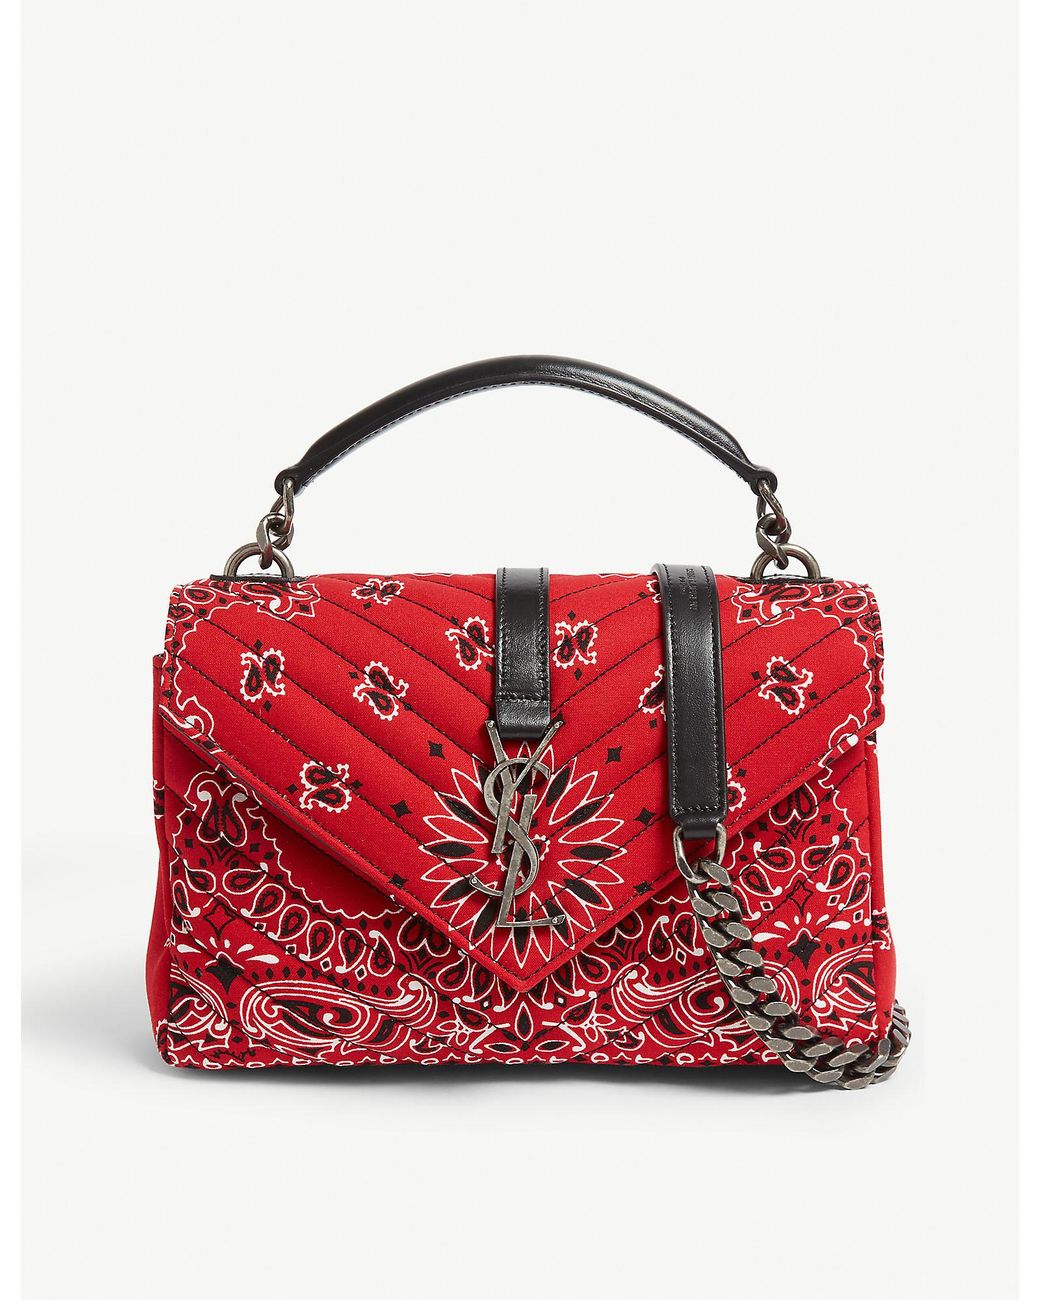 Yves Saint Laurent Medium Red College Bag